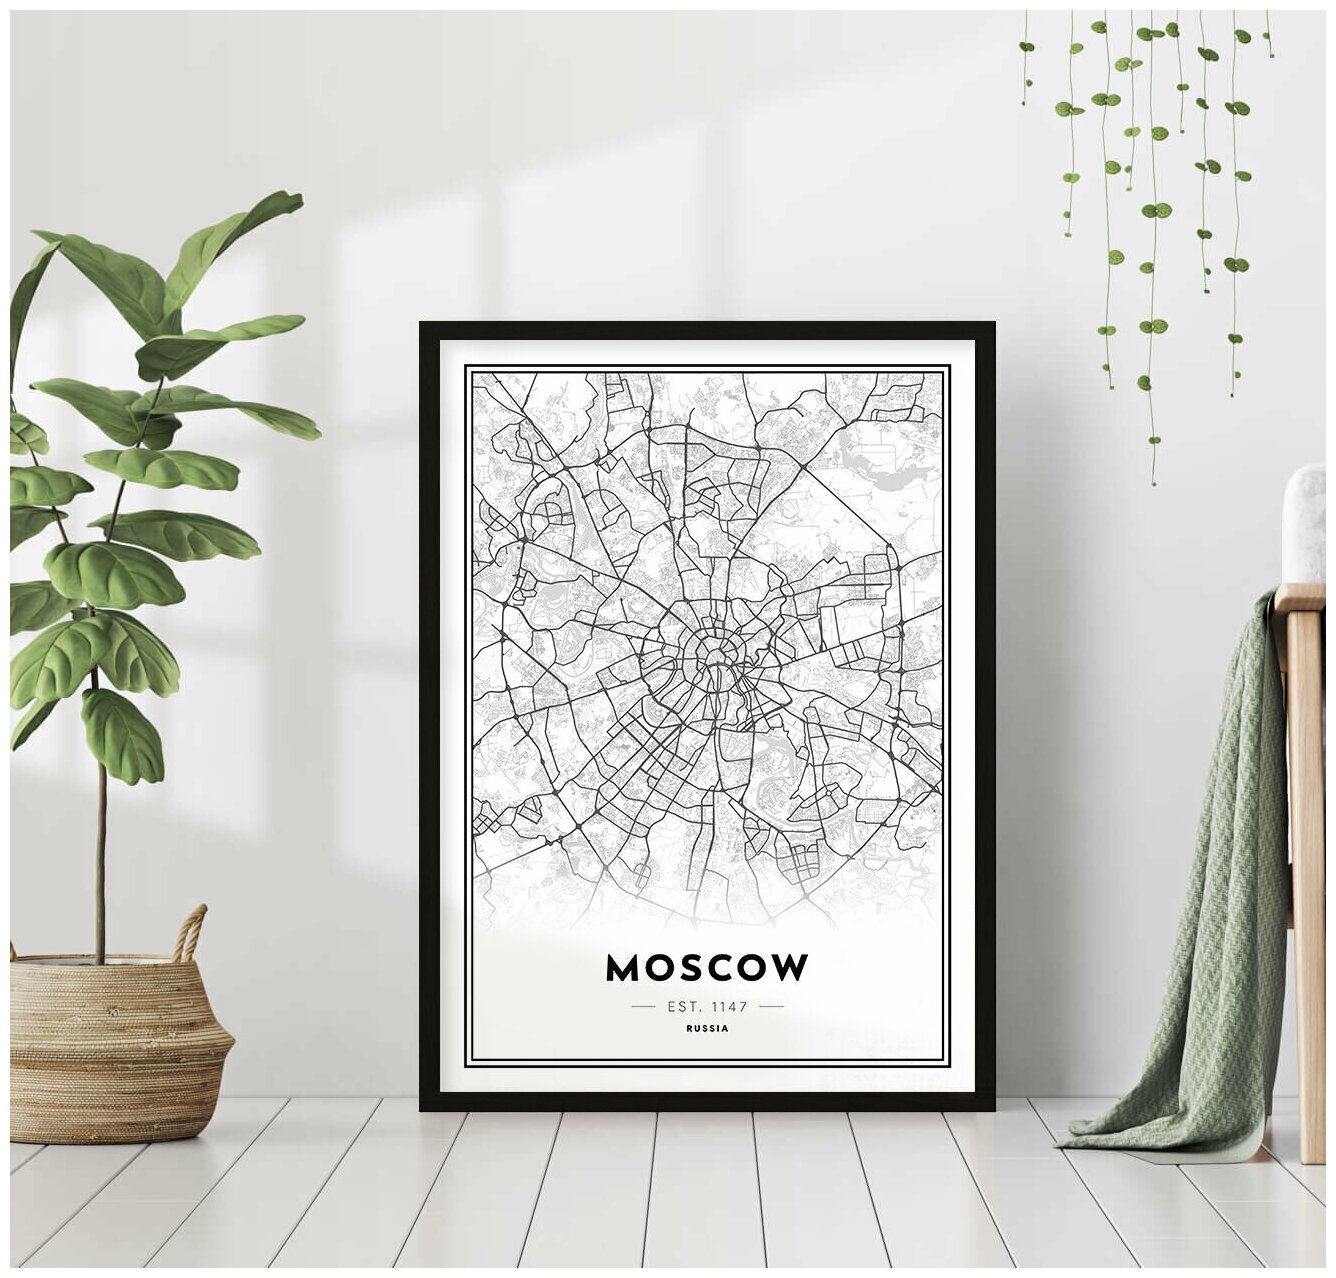 Постер В рамке "Москва. Карта города" 40 на 50 (черная рама) / Картина для интерьера / Плакат / Постер на стену / Интерьерные картины